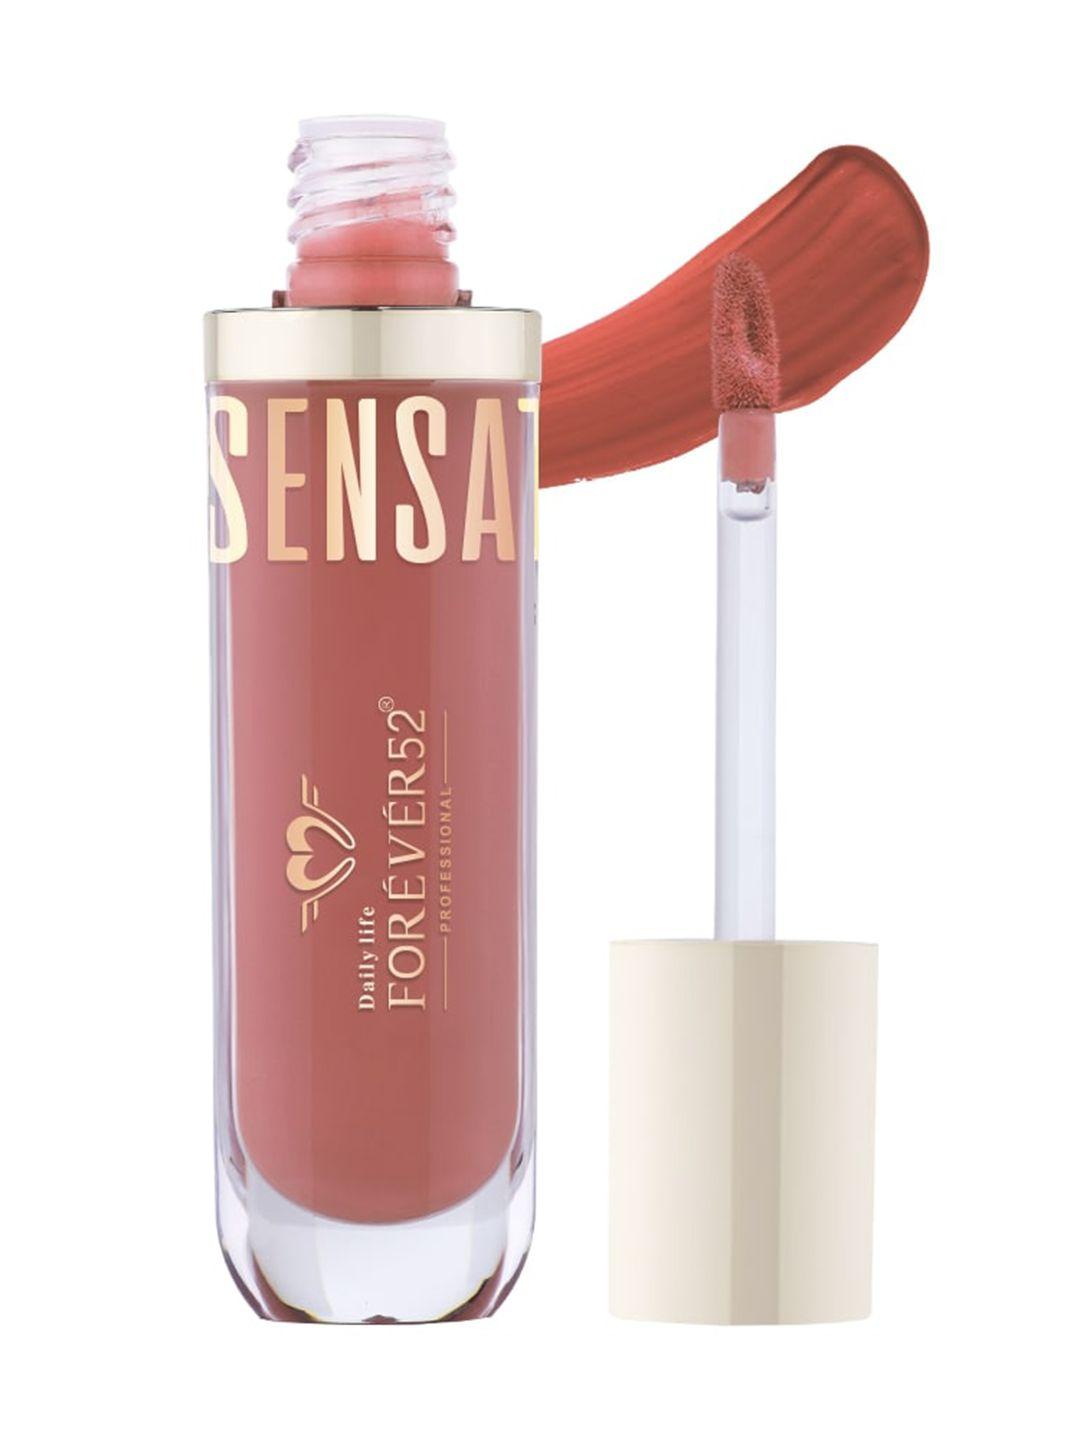 daily life forever52 sensational long lasting liquid lipstick 6ml - terra cotta 006